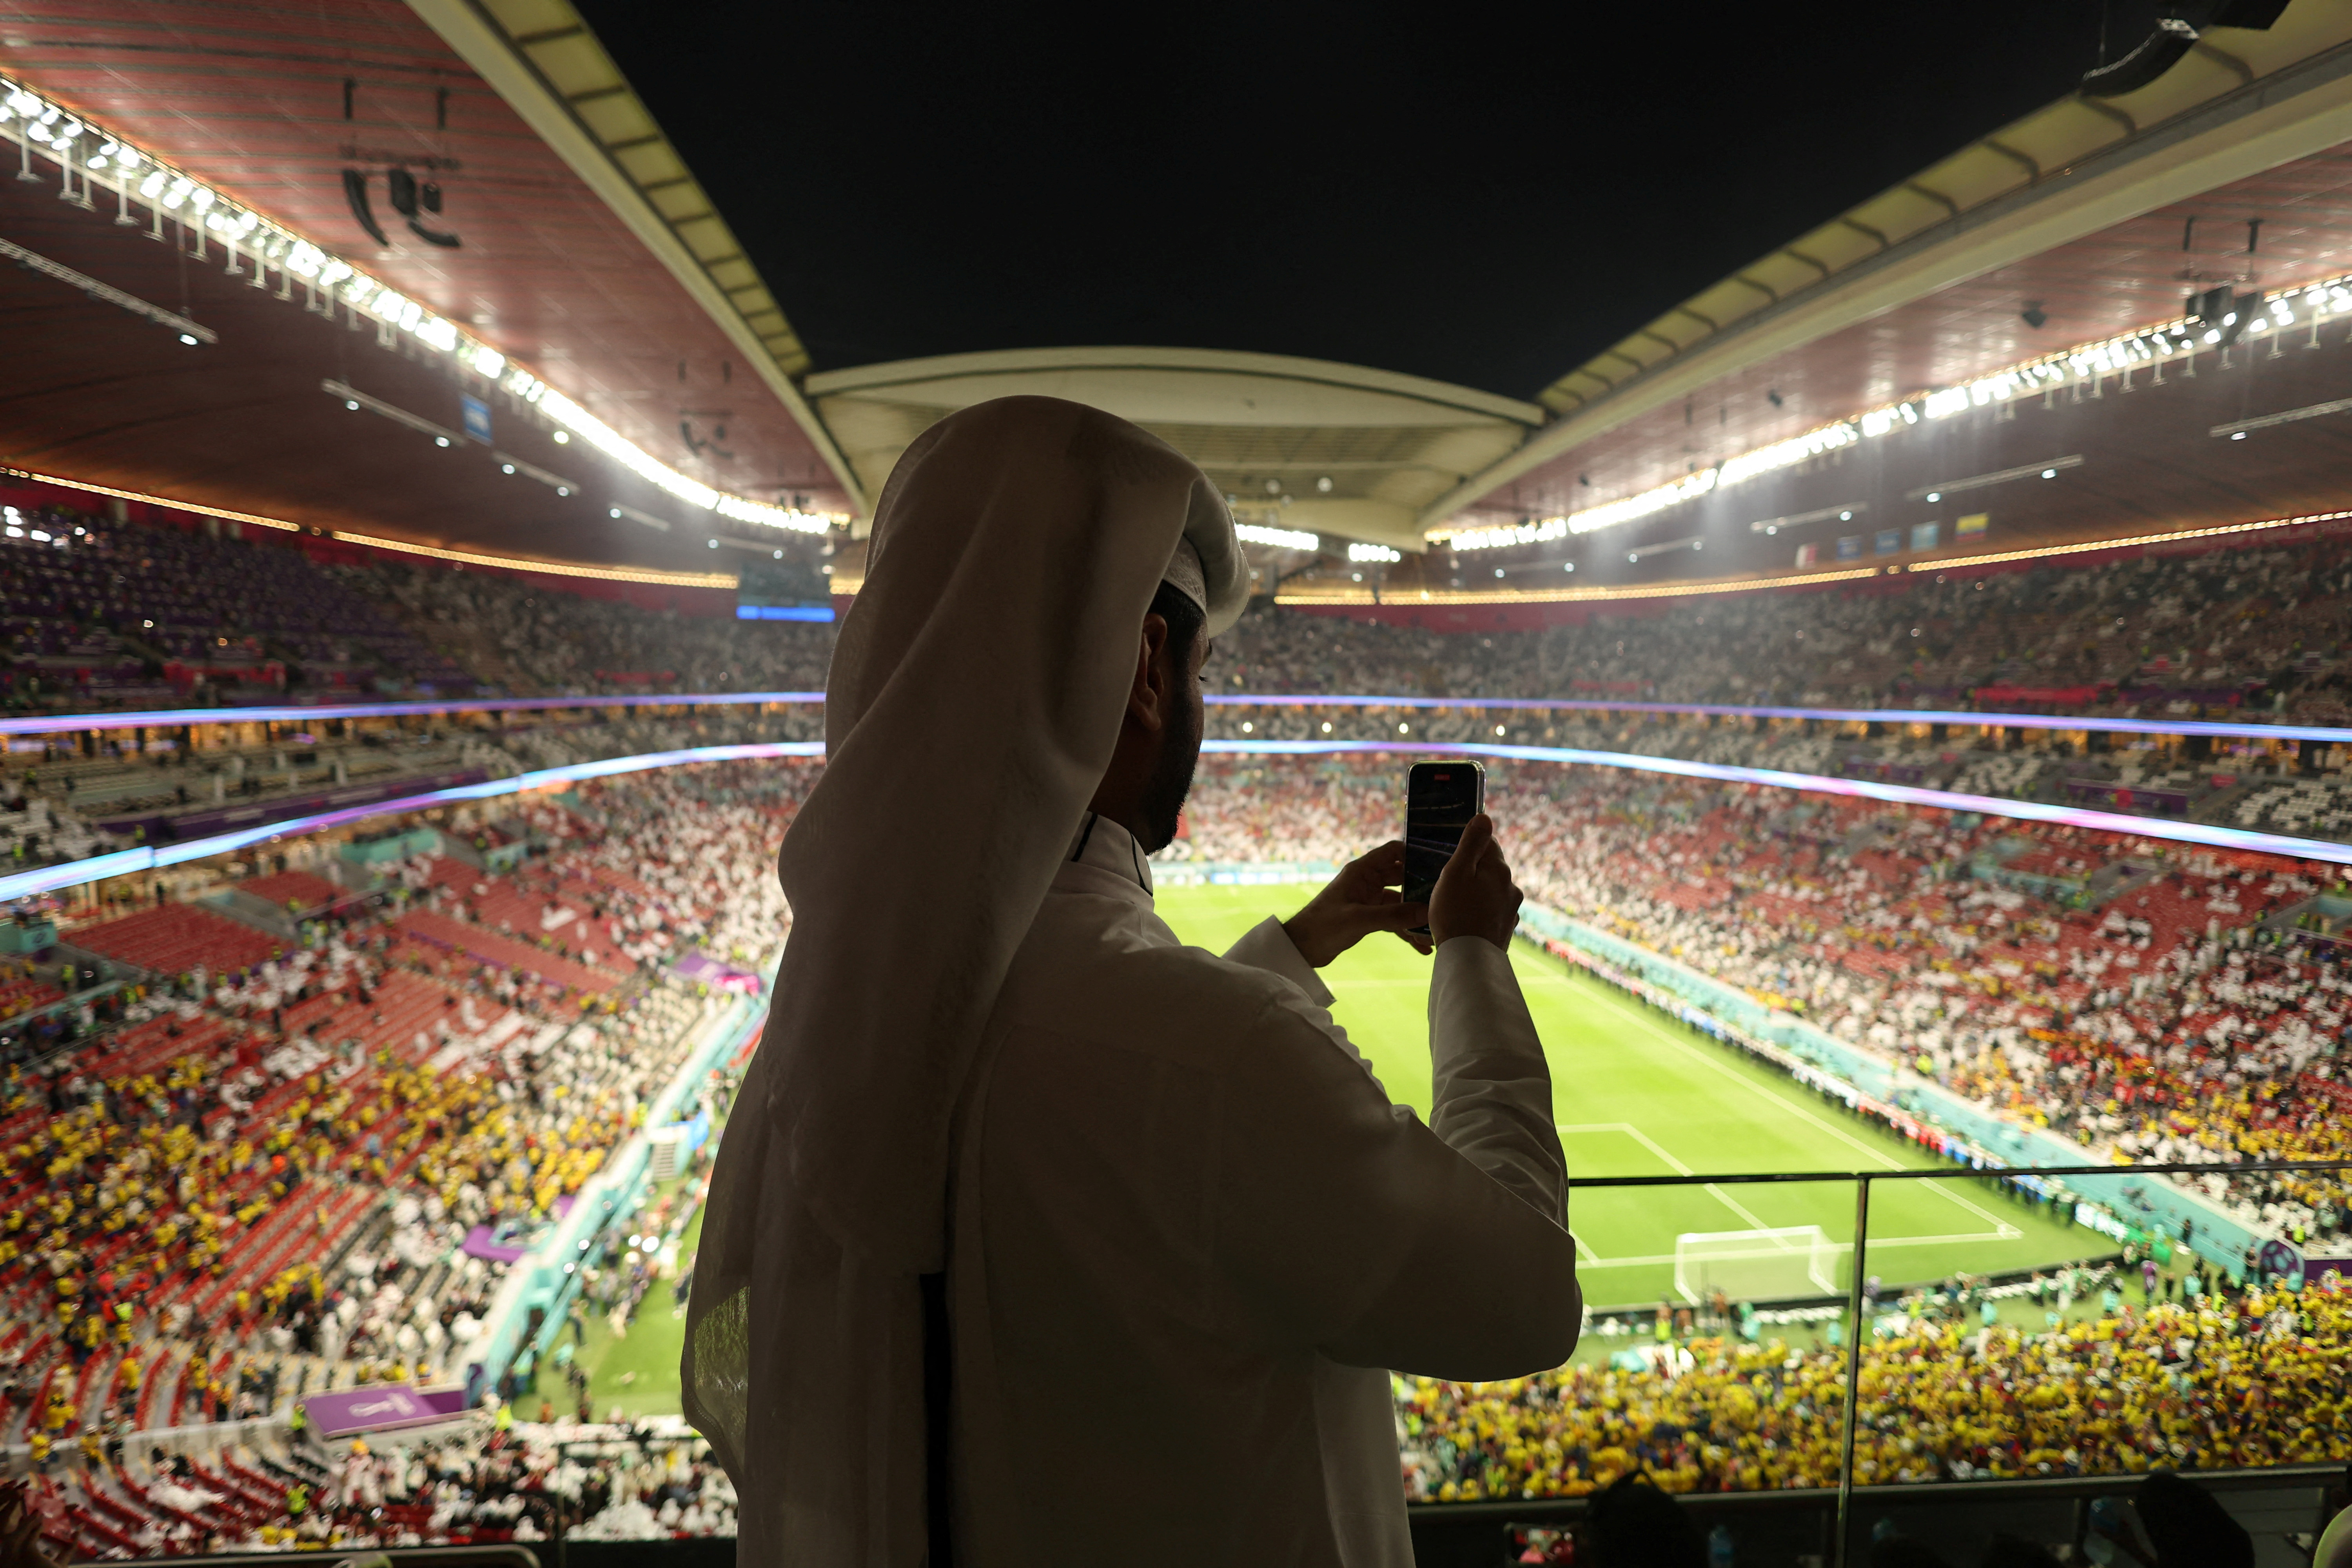 La Coupe du monde, une simple étape de l'ambitieux plan de développement du Qatar